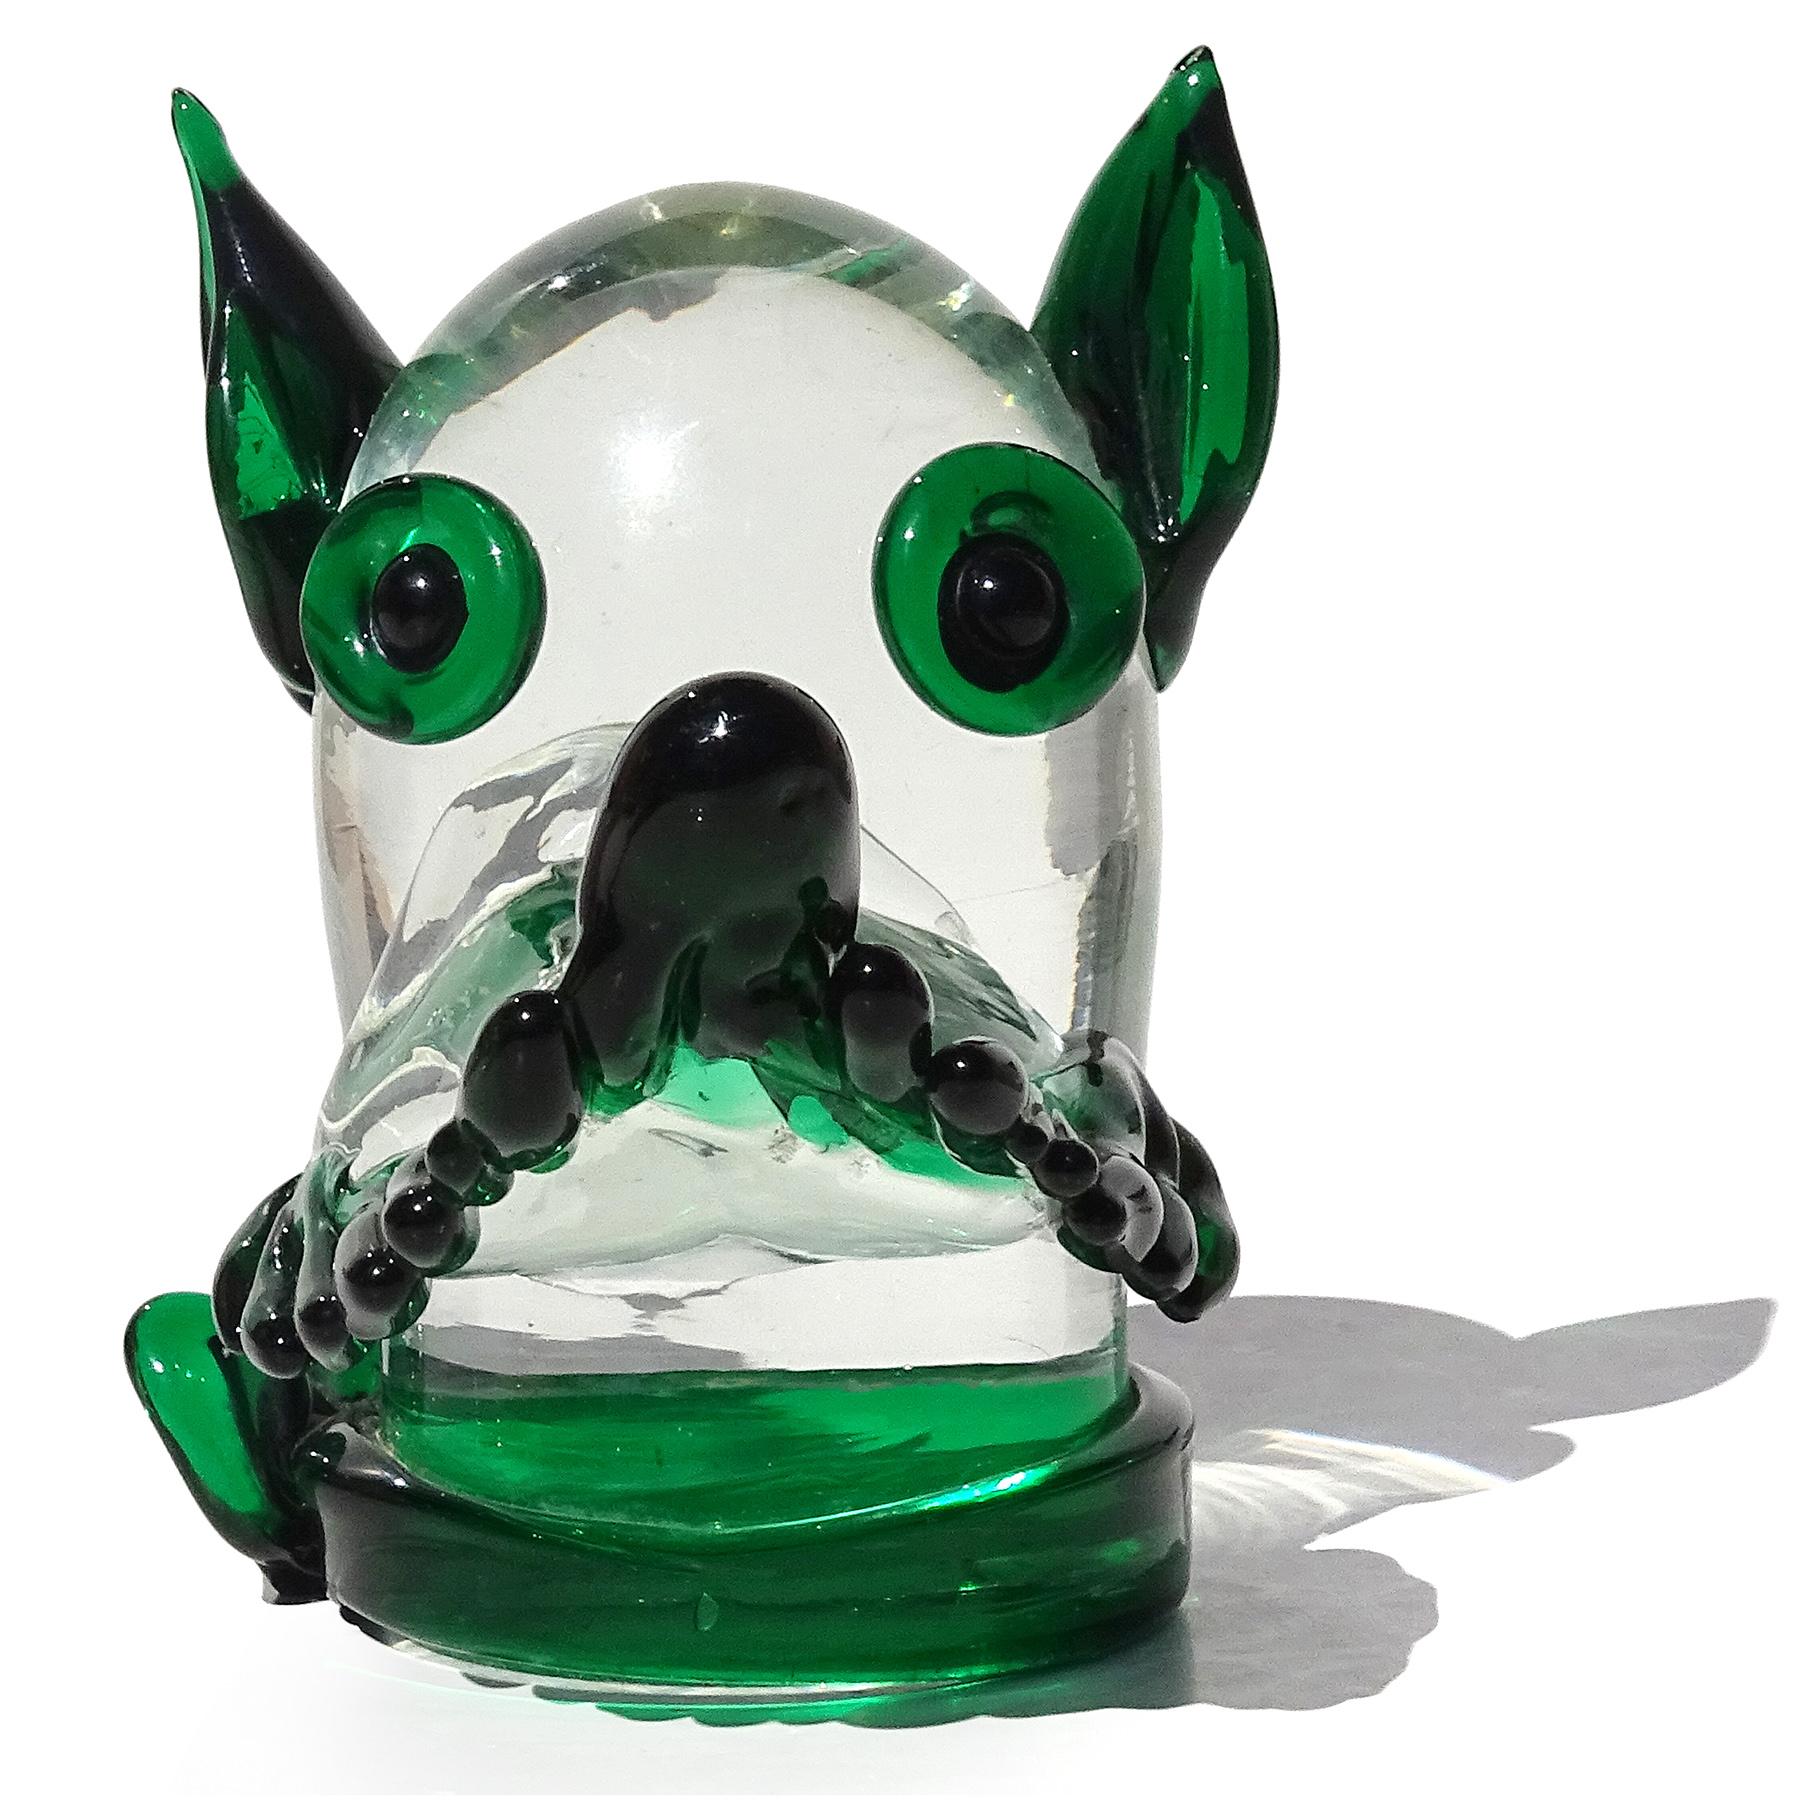 Vintage Vintage Murano soufflé à la main en verre d'art italien vert et transparent tête de chien ou presse-papier. Documenté à la société Fratelli Toso. Je pense qu'il s'agit d'un Terrier ou d'un chien Scotty. La tête porte un mouchoir noué autour